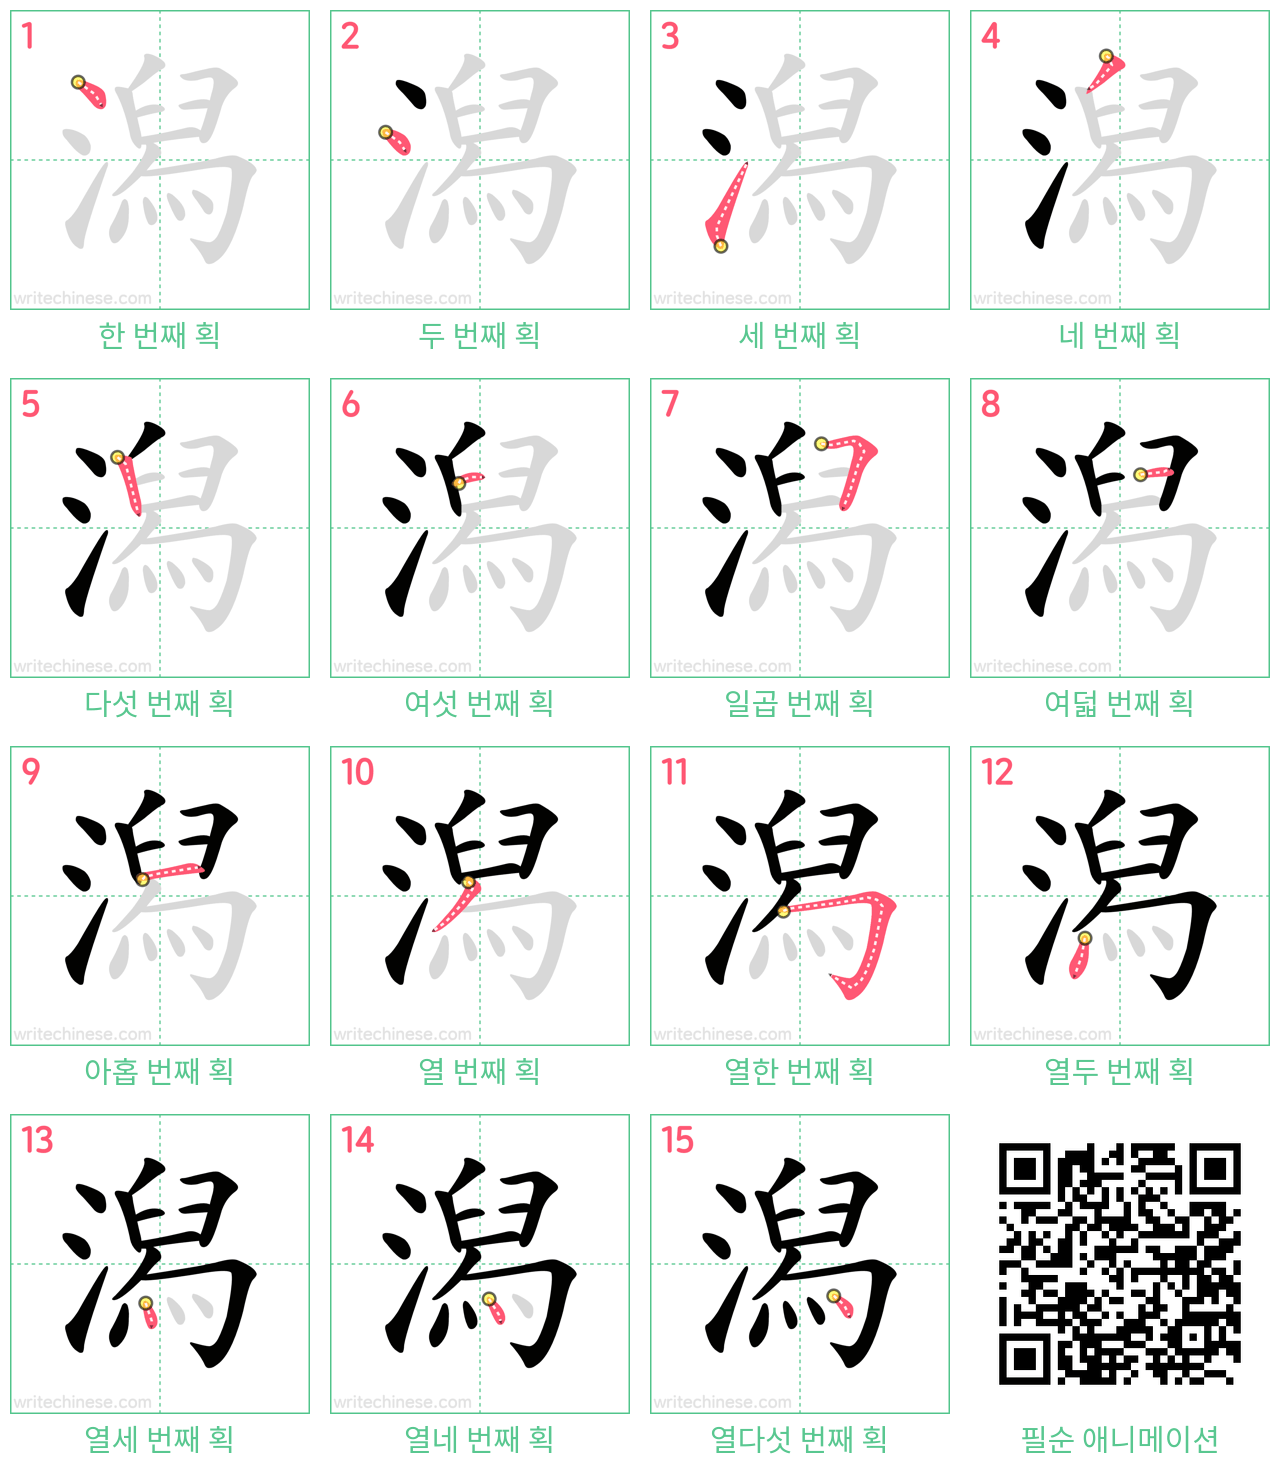 潟 step-by-step stroke order diagrams